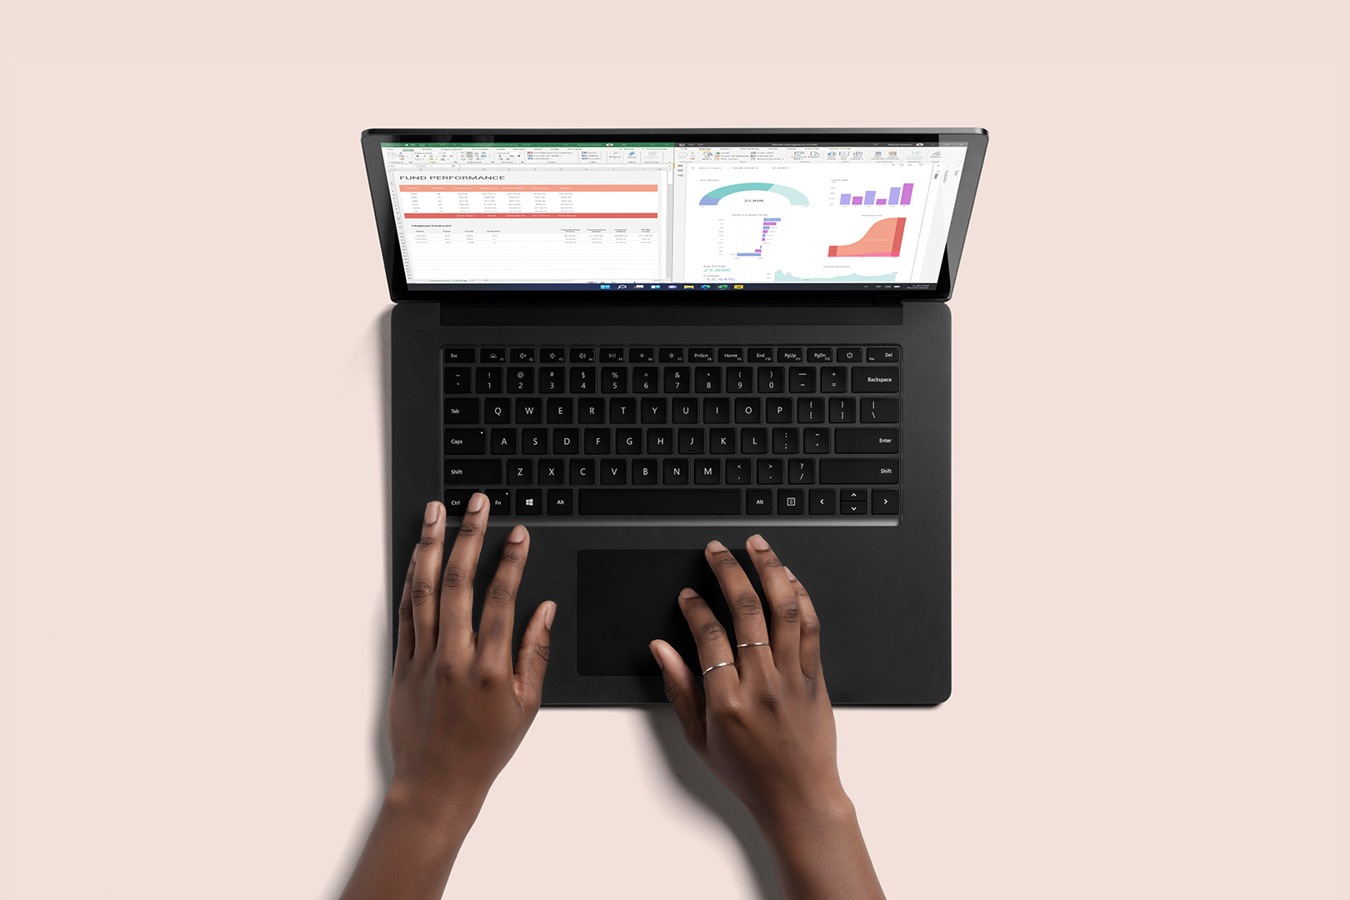 Vue de haut du Surface Laptop 4 en noir, avec deux mains tapant au clavier
